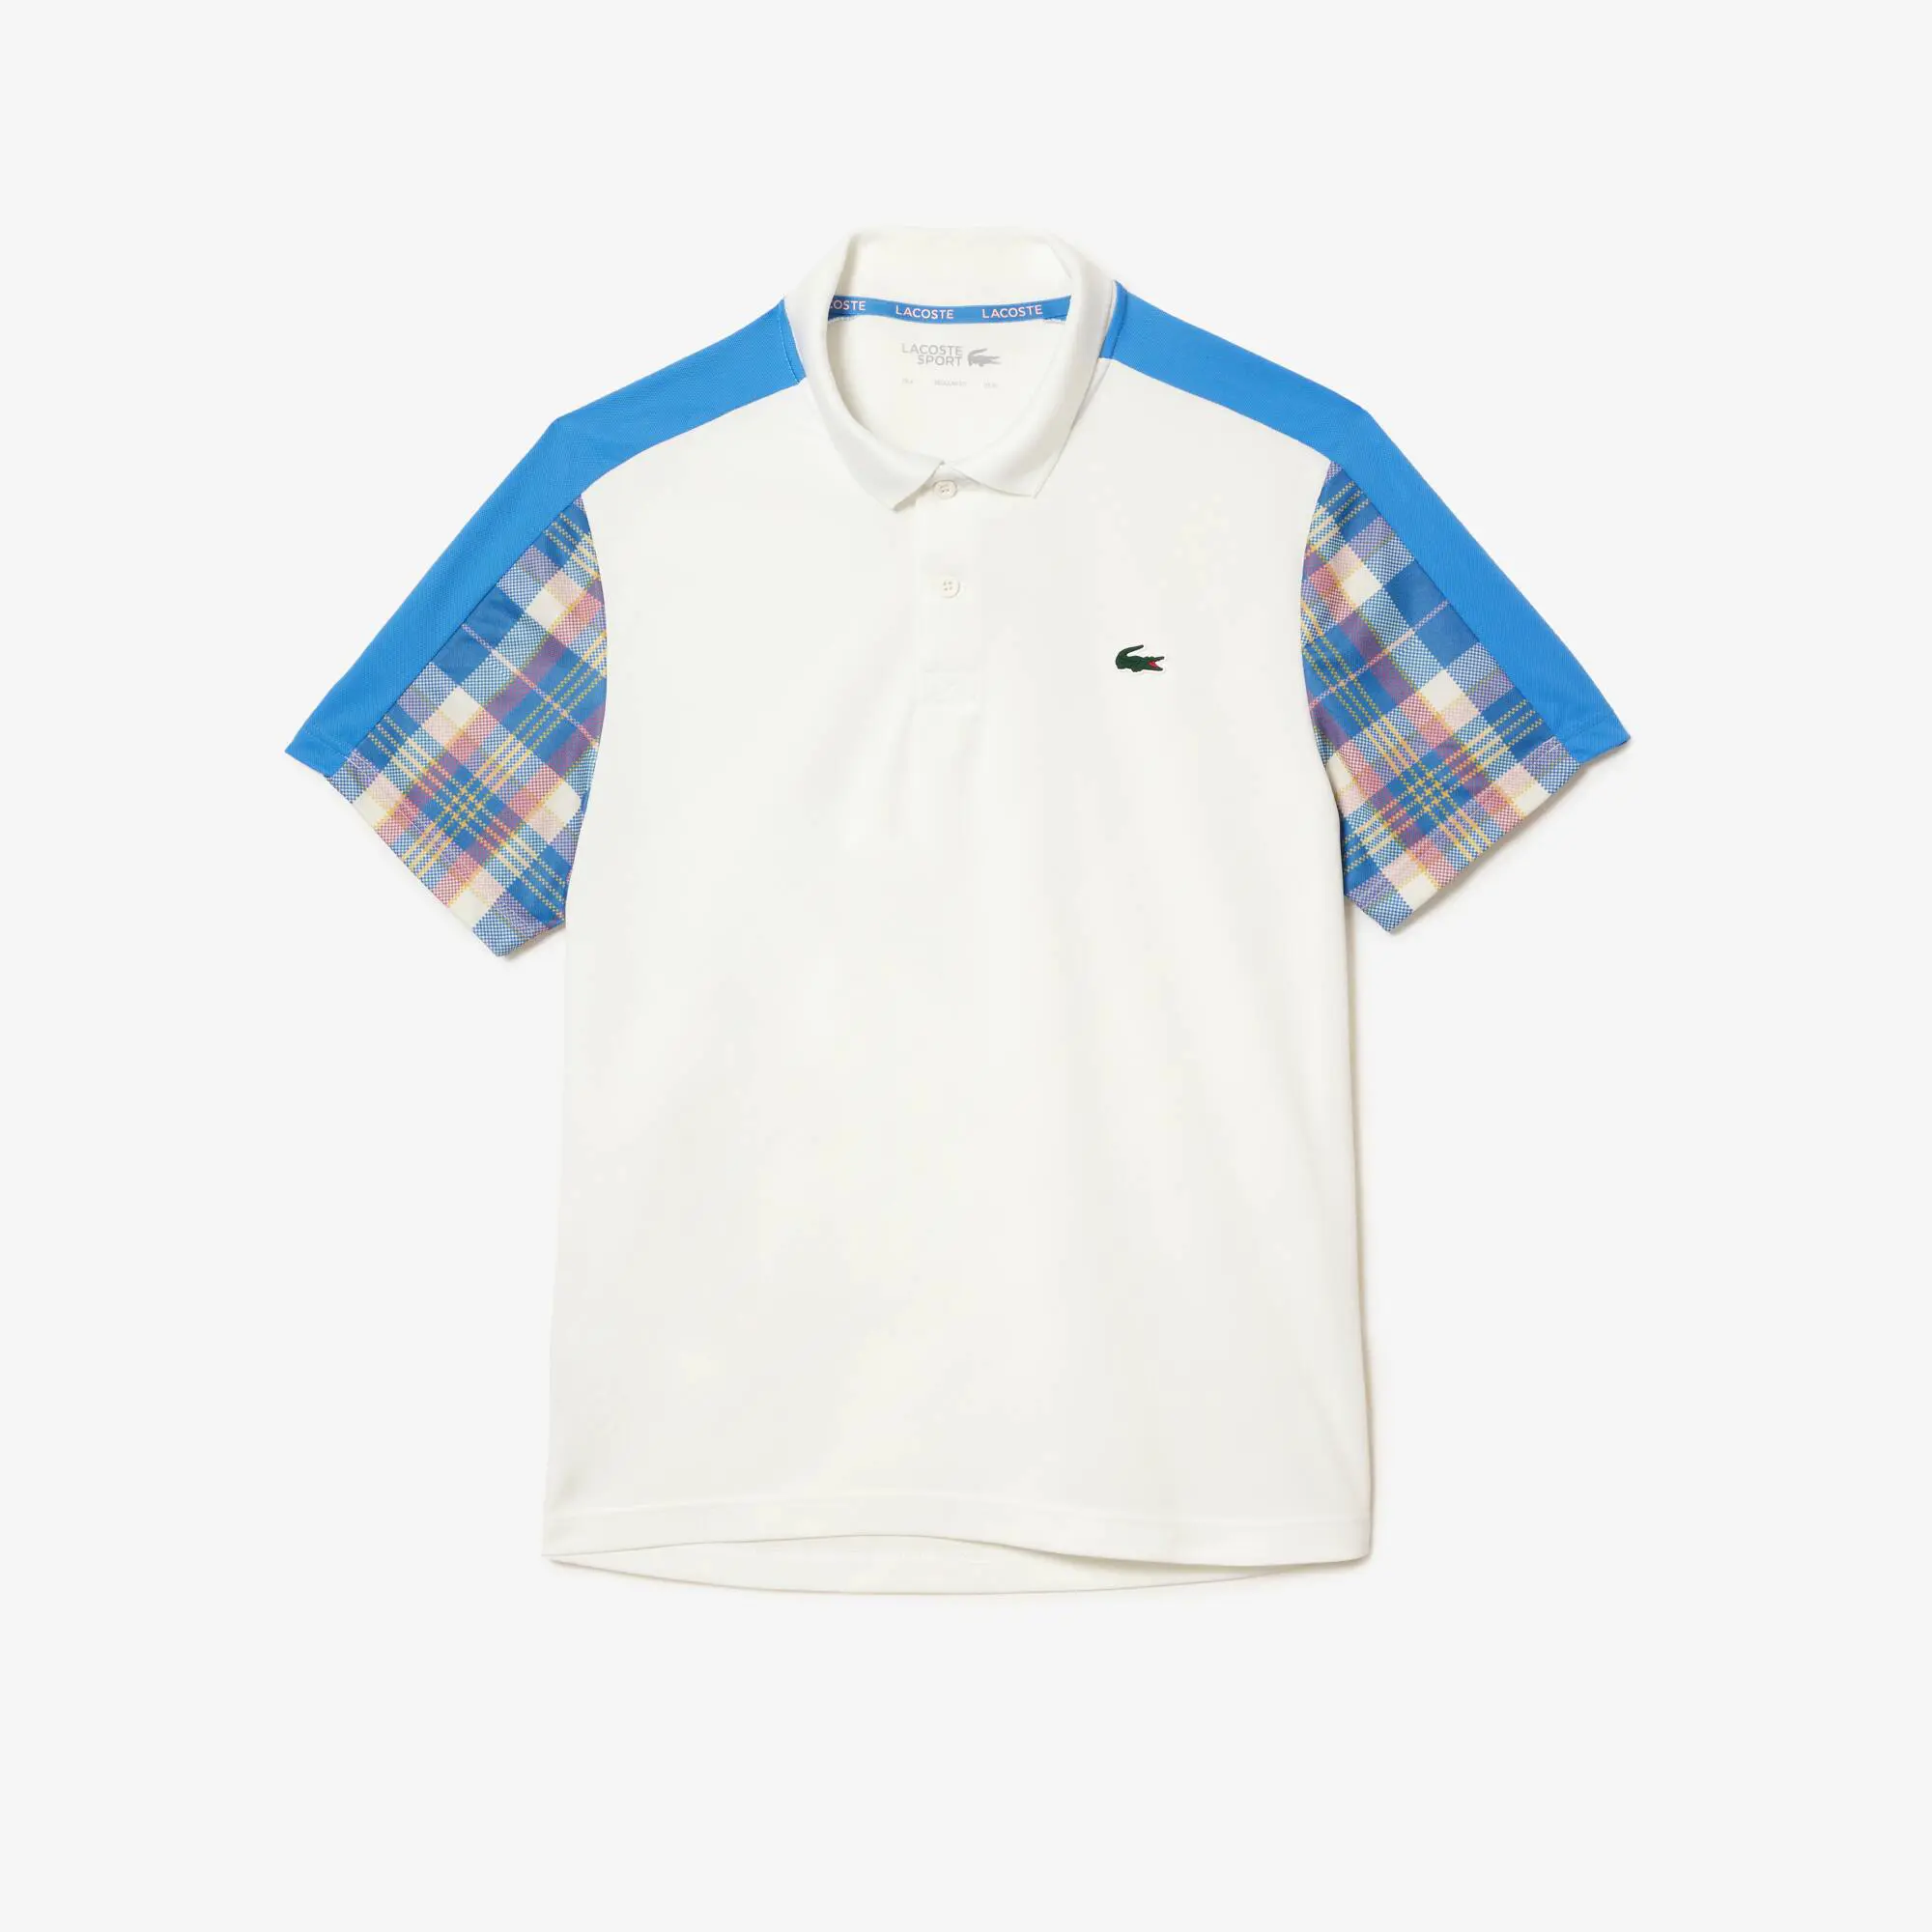 Lacoste Men’s Lacoste Colourblock Checked Polo Shirt. 2